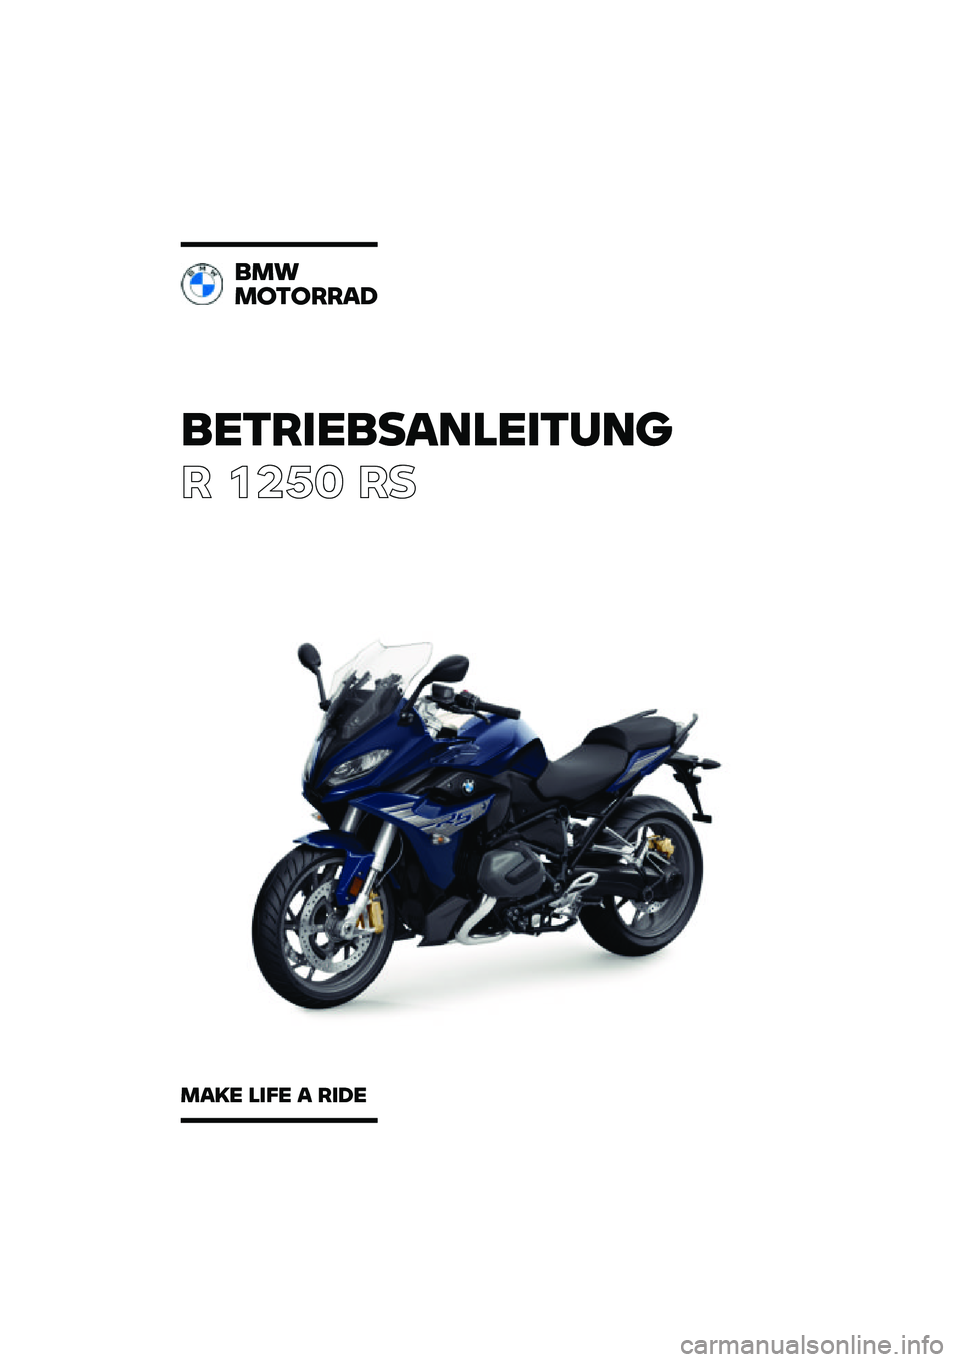 BMW MOTORRAD R 1250 RS 2021  Betriebsanleitung (in German) ���������\b�	�
�����	�\f
� ����	 ��
��
�
�
������\b�
�
�\b�� �
��� �\b ���� 